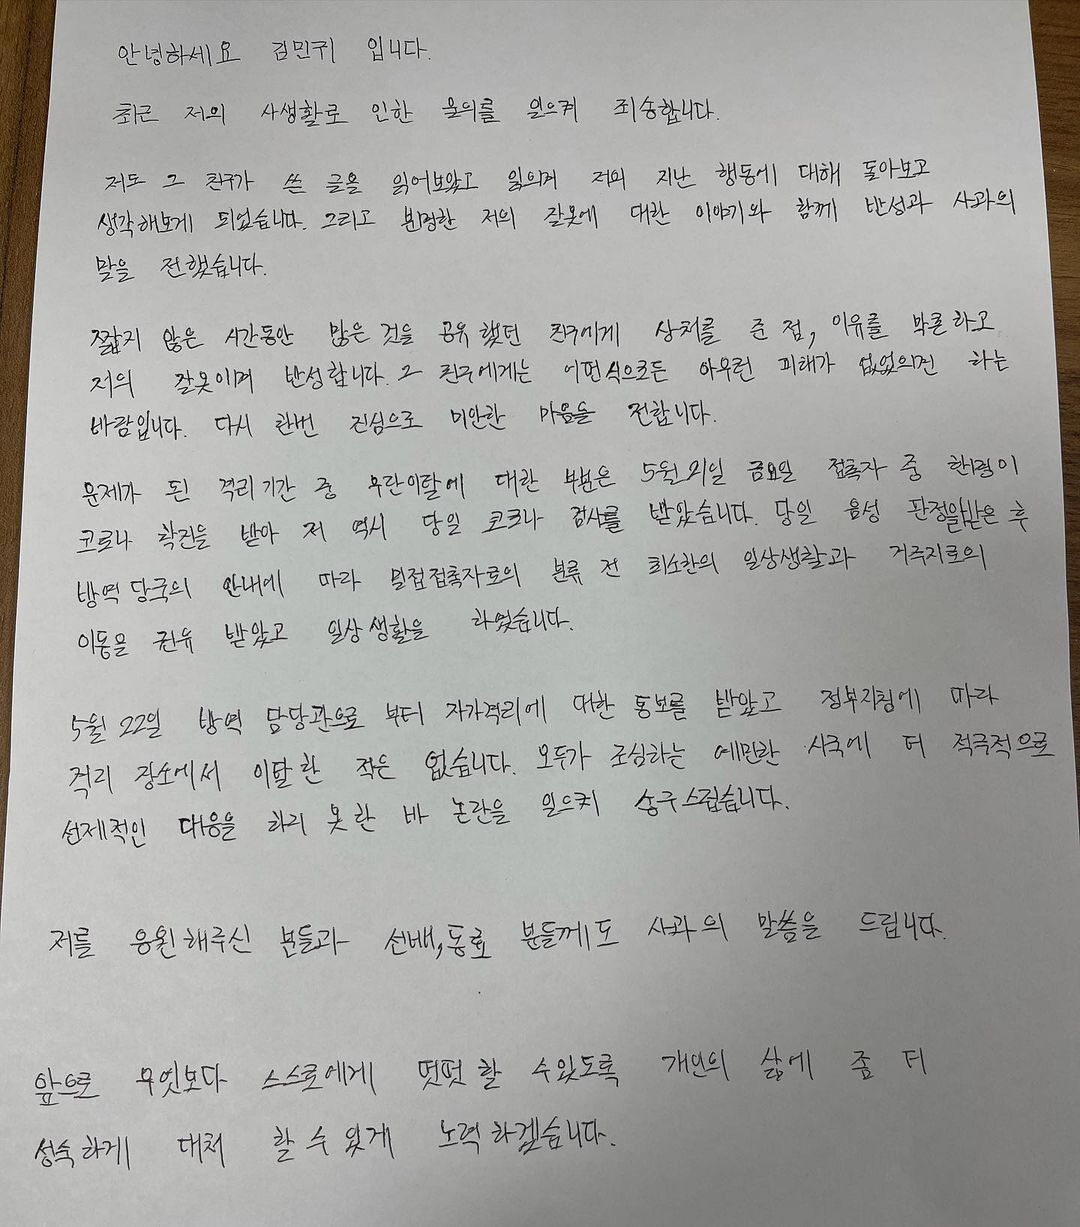 Surat permintaan maaf Kim MIn Gwi atas kontroversi yang dibuatnya baru-baru ini